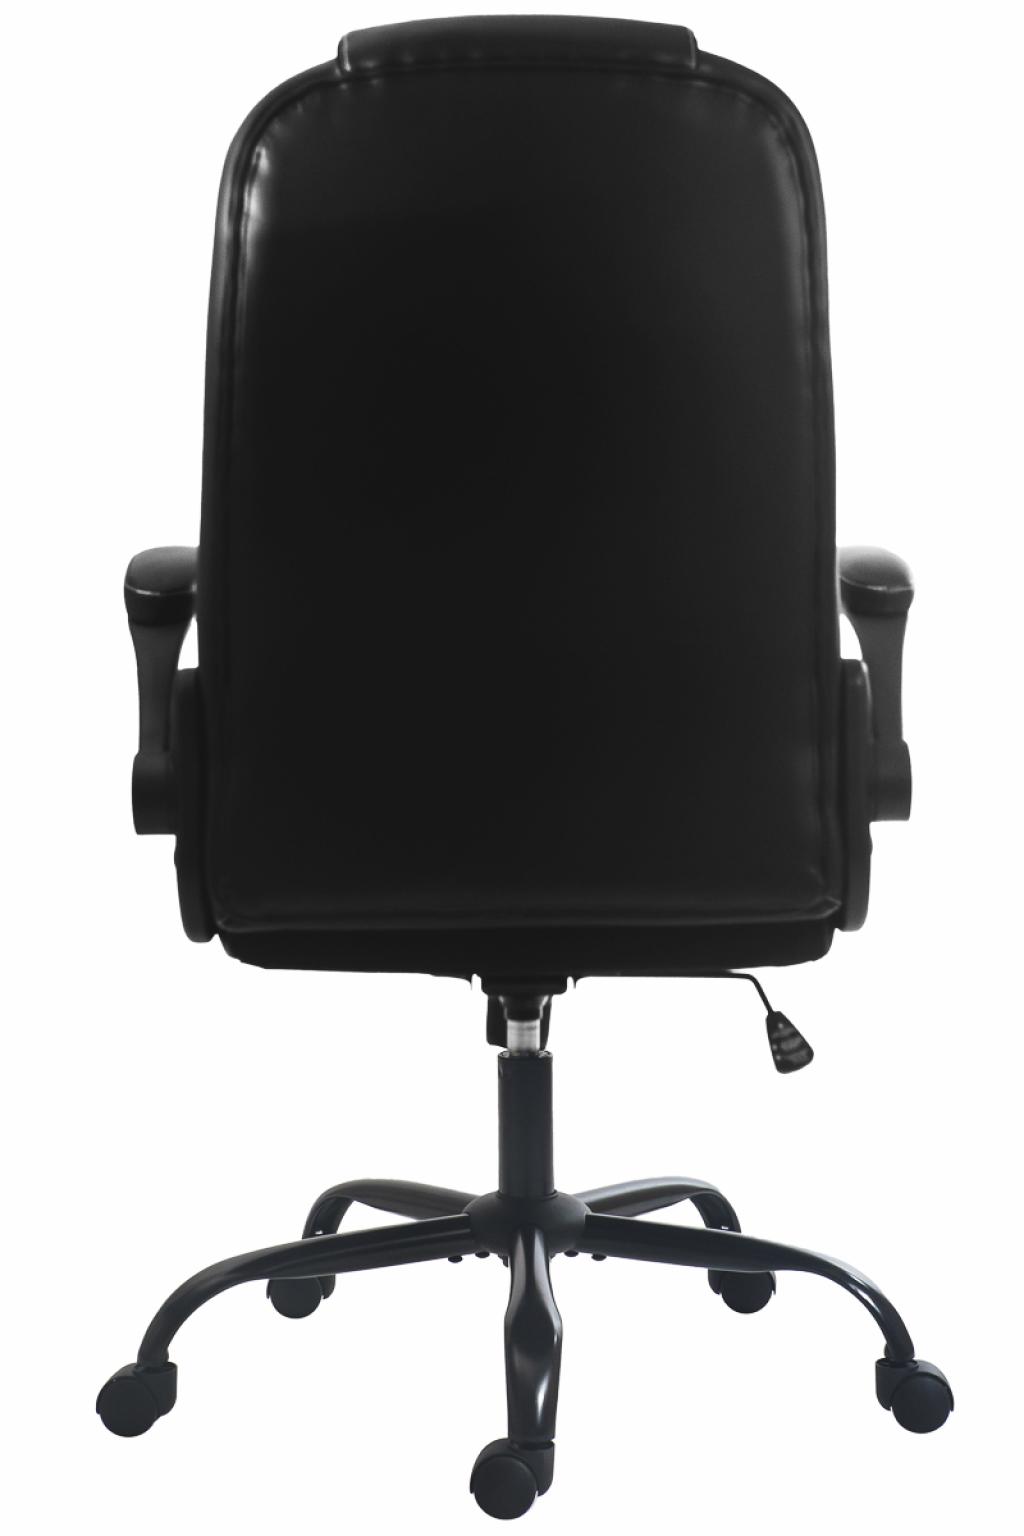 Continental irodai forgószék - vezetői szék (A)